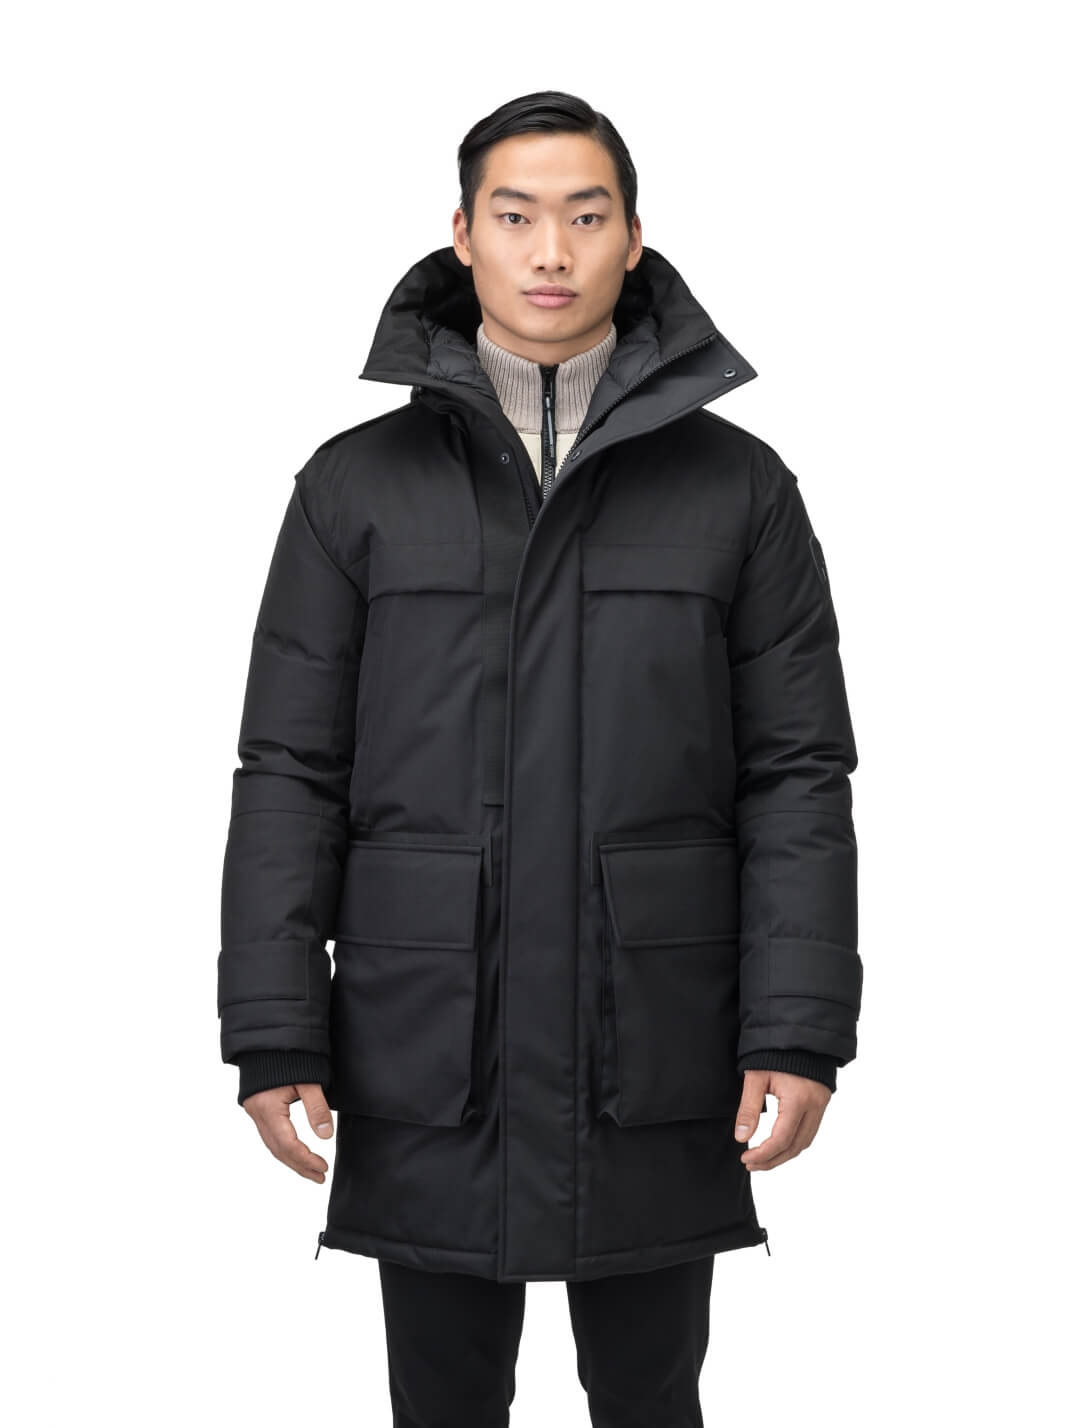 Hooded Parka Long Regular Fit Men's L - Coats & jackets